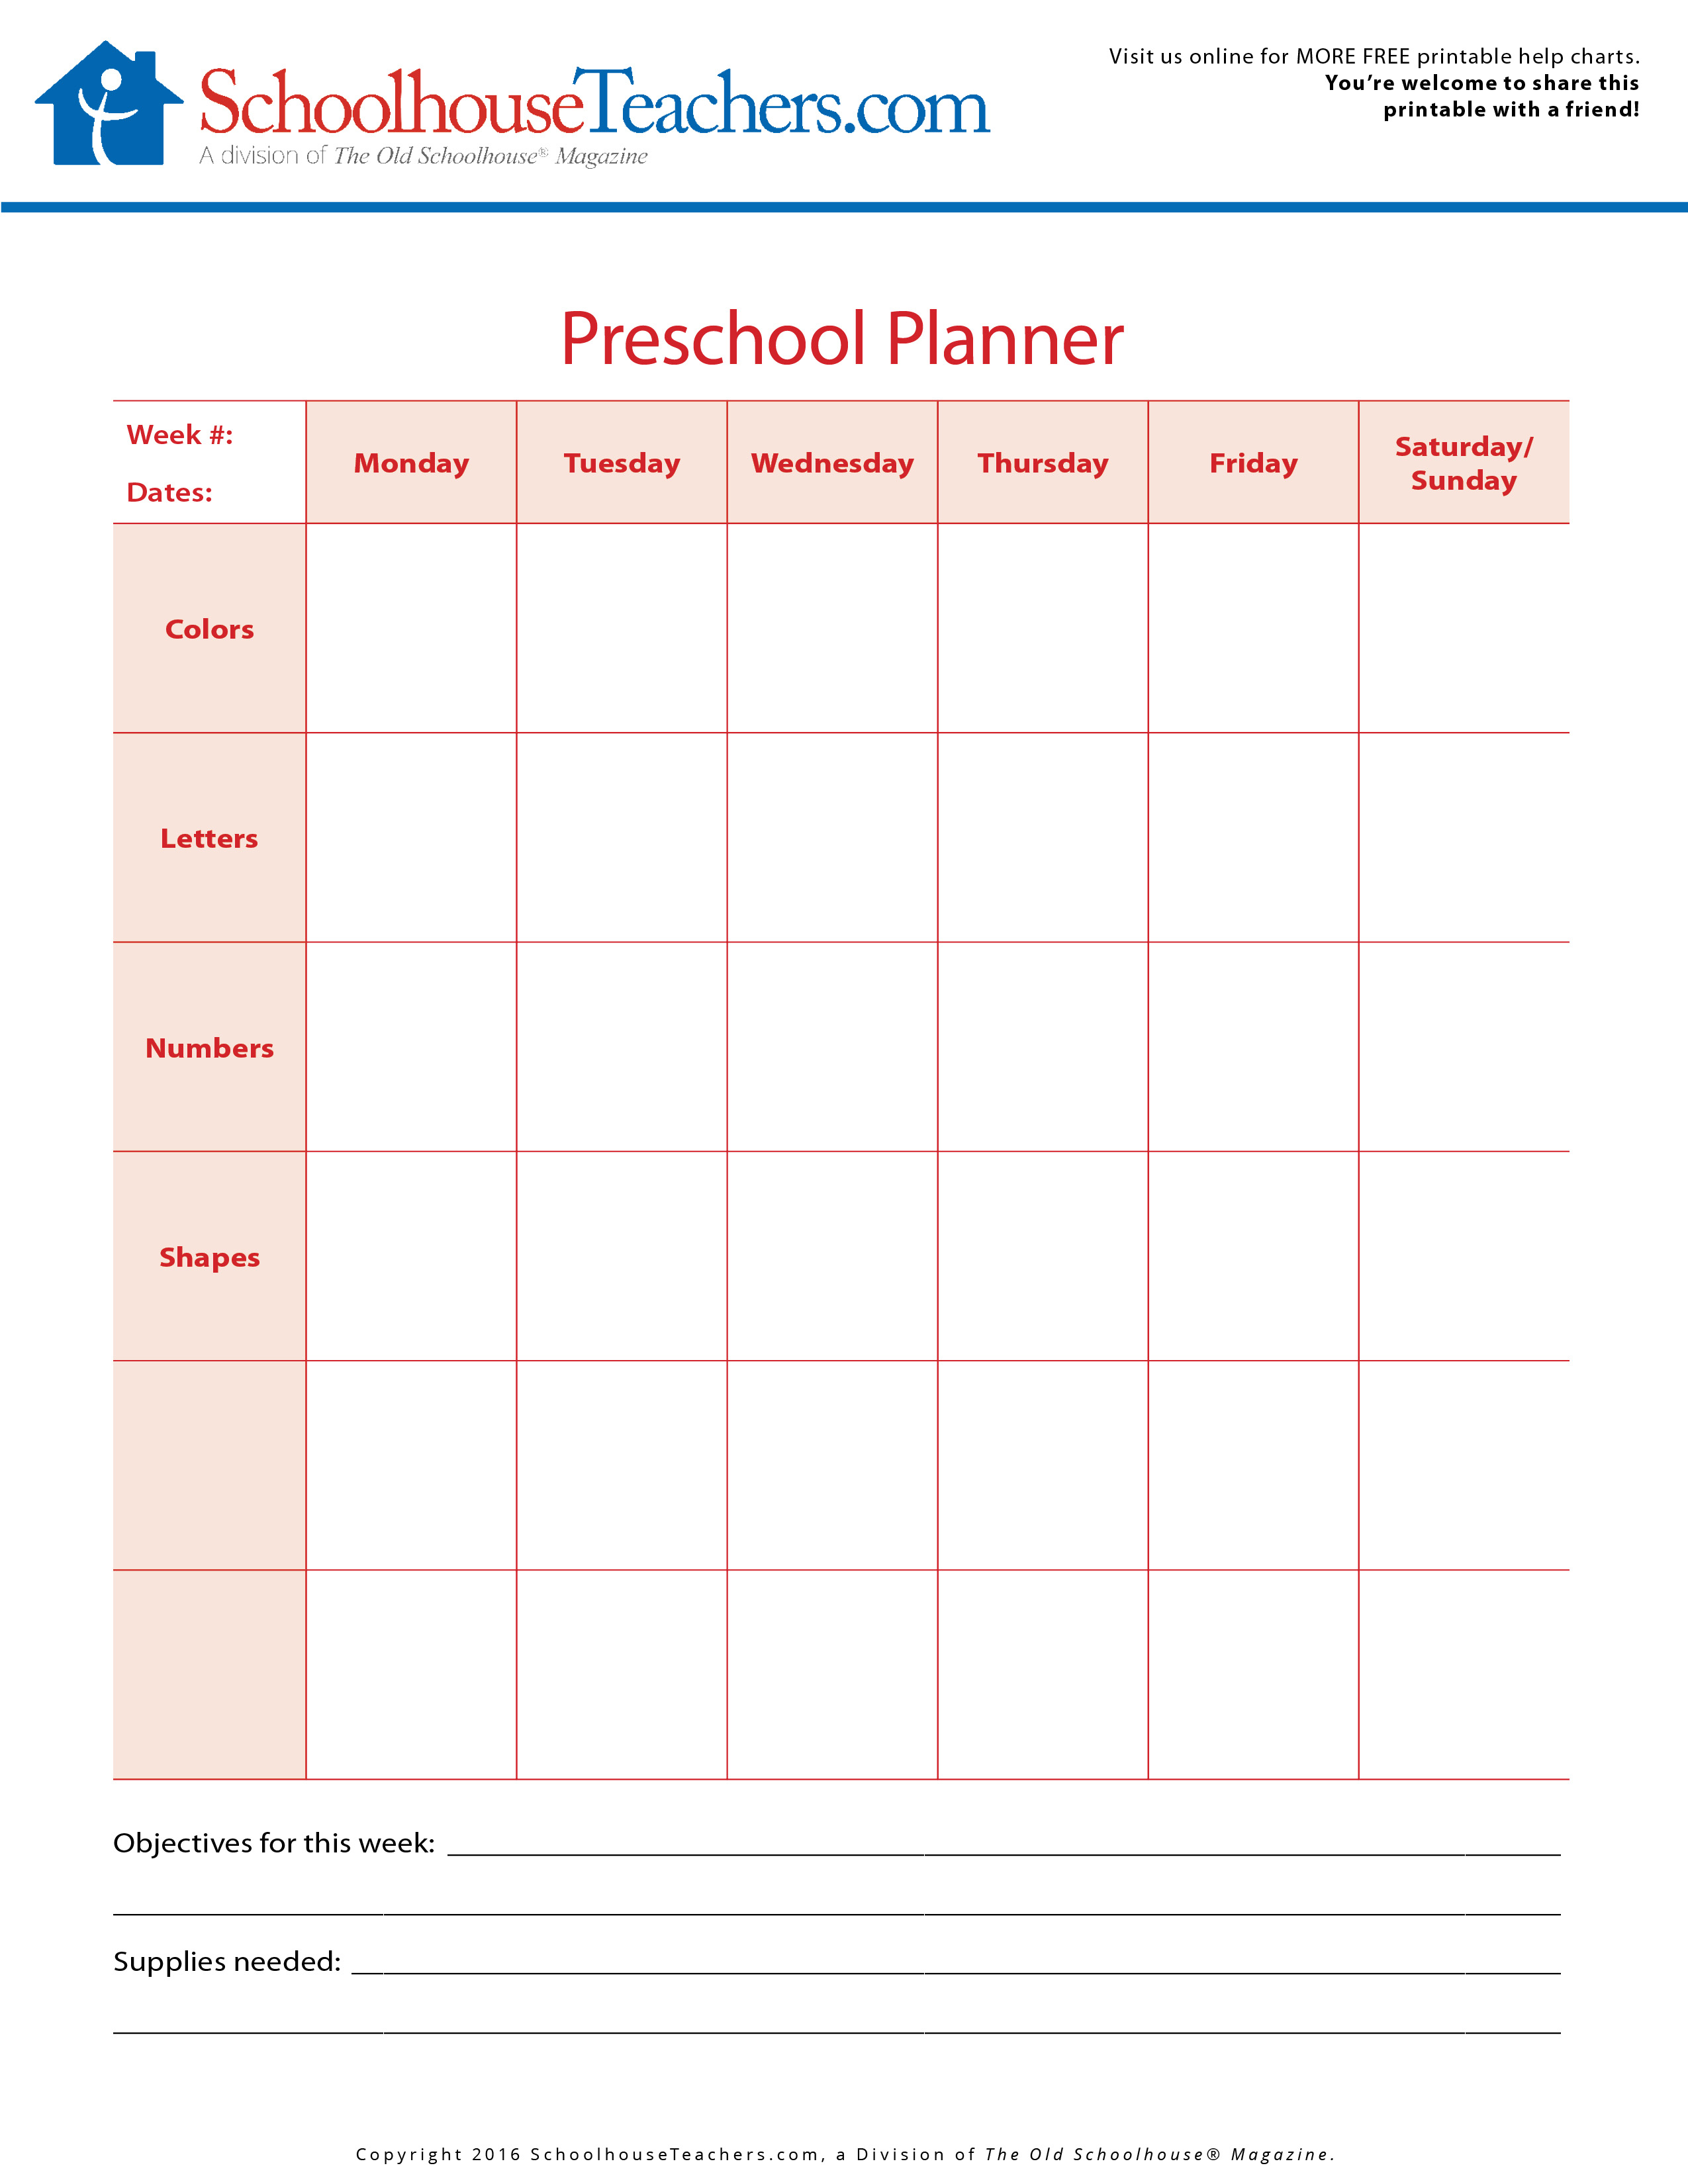 preschool-planner-weekly-schedule-printouts-and-activities